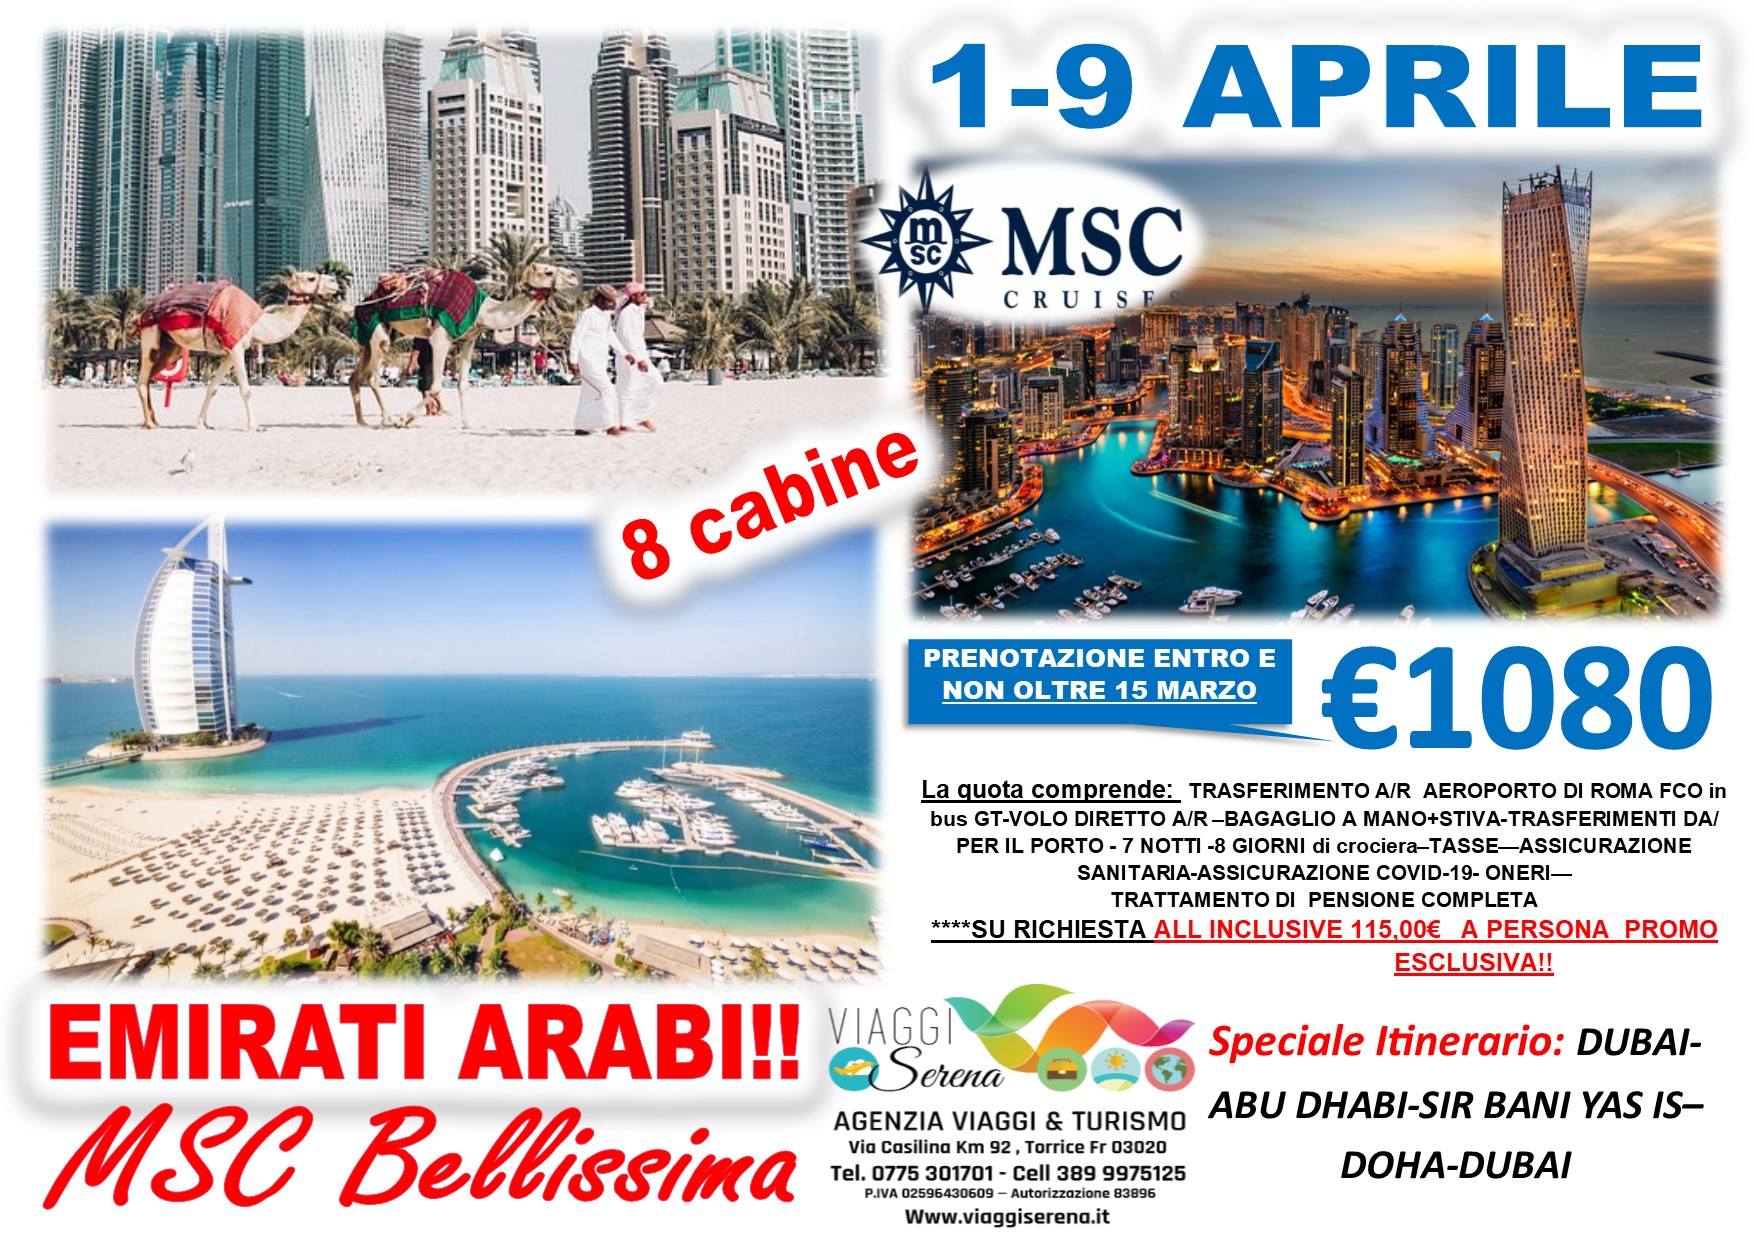 Viaggi di Gruppo: Crociera Emirati Arabi , Dubai & Doha 1-9 Aprile €1080,00